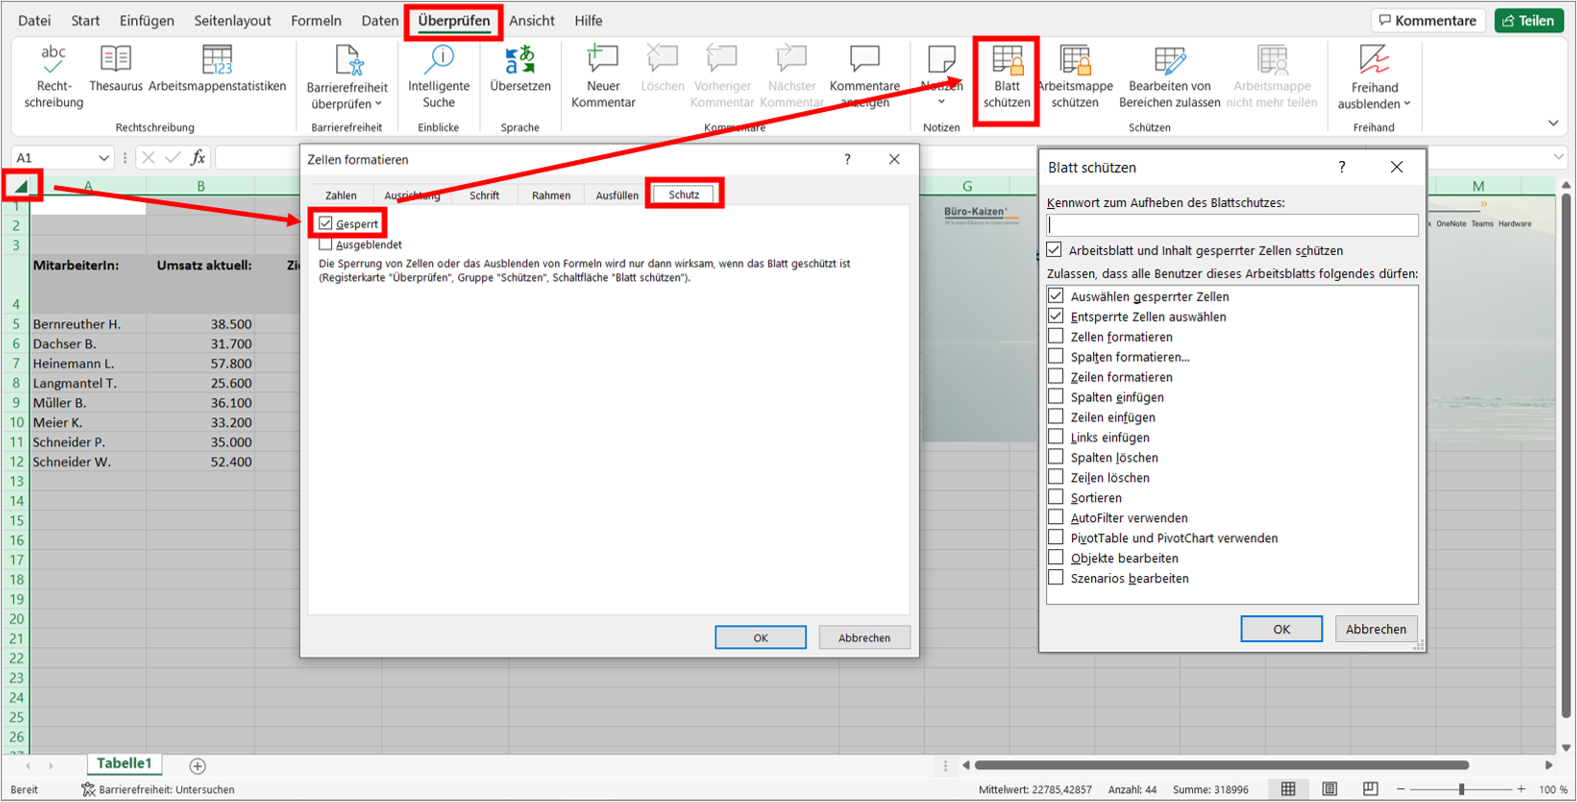 Um Formeln in Excel vor Überschreiben zu schützen, muss zunächst der Zellschutz und dann der Blattschutz aktiviert werden. Bild: Microsoft Excel, Büro-Kaizen.